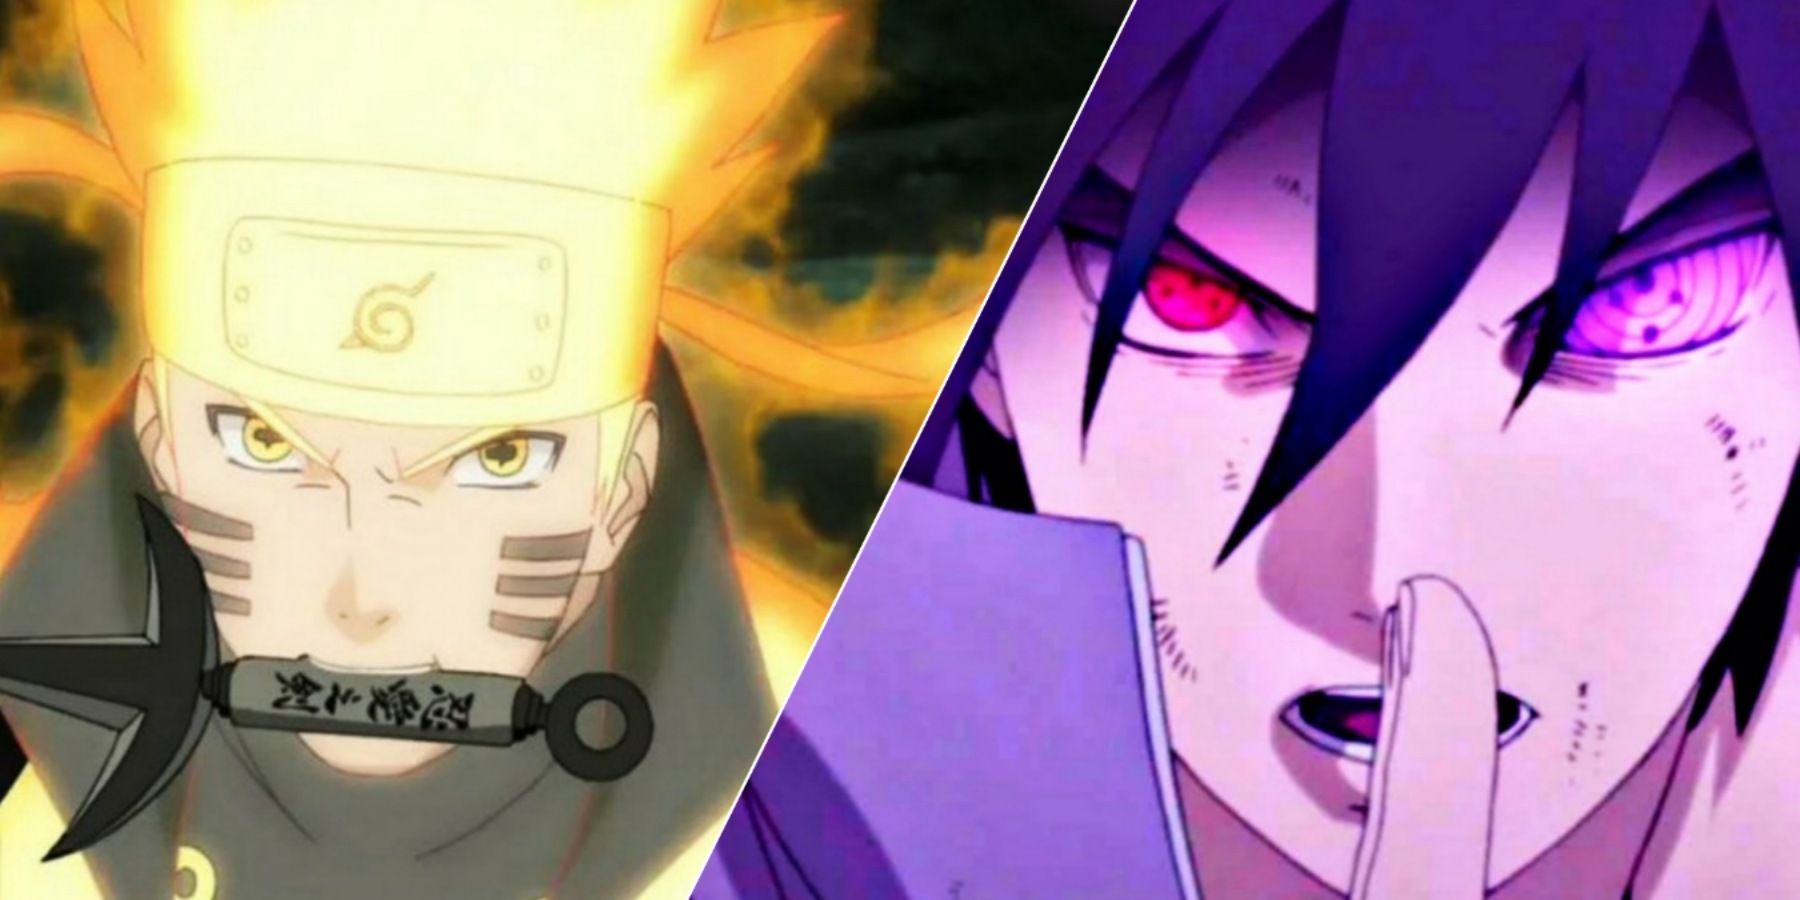 Naruto’nun Sasuke’den daha güçlü olduğunu kanıtladı